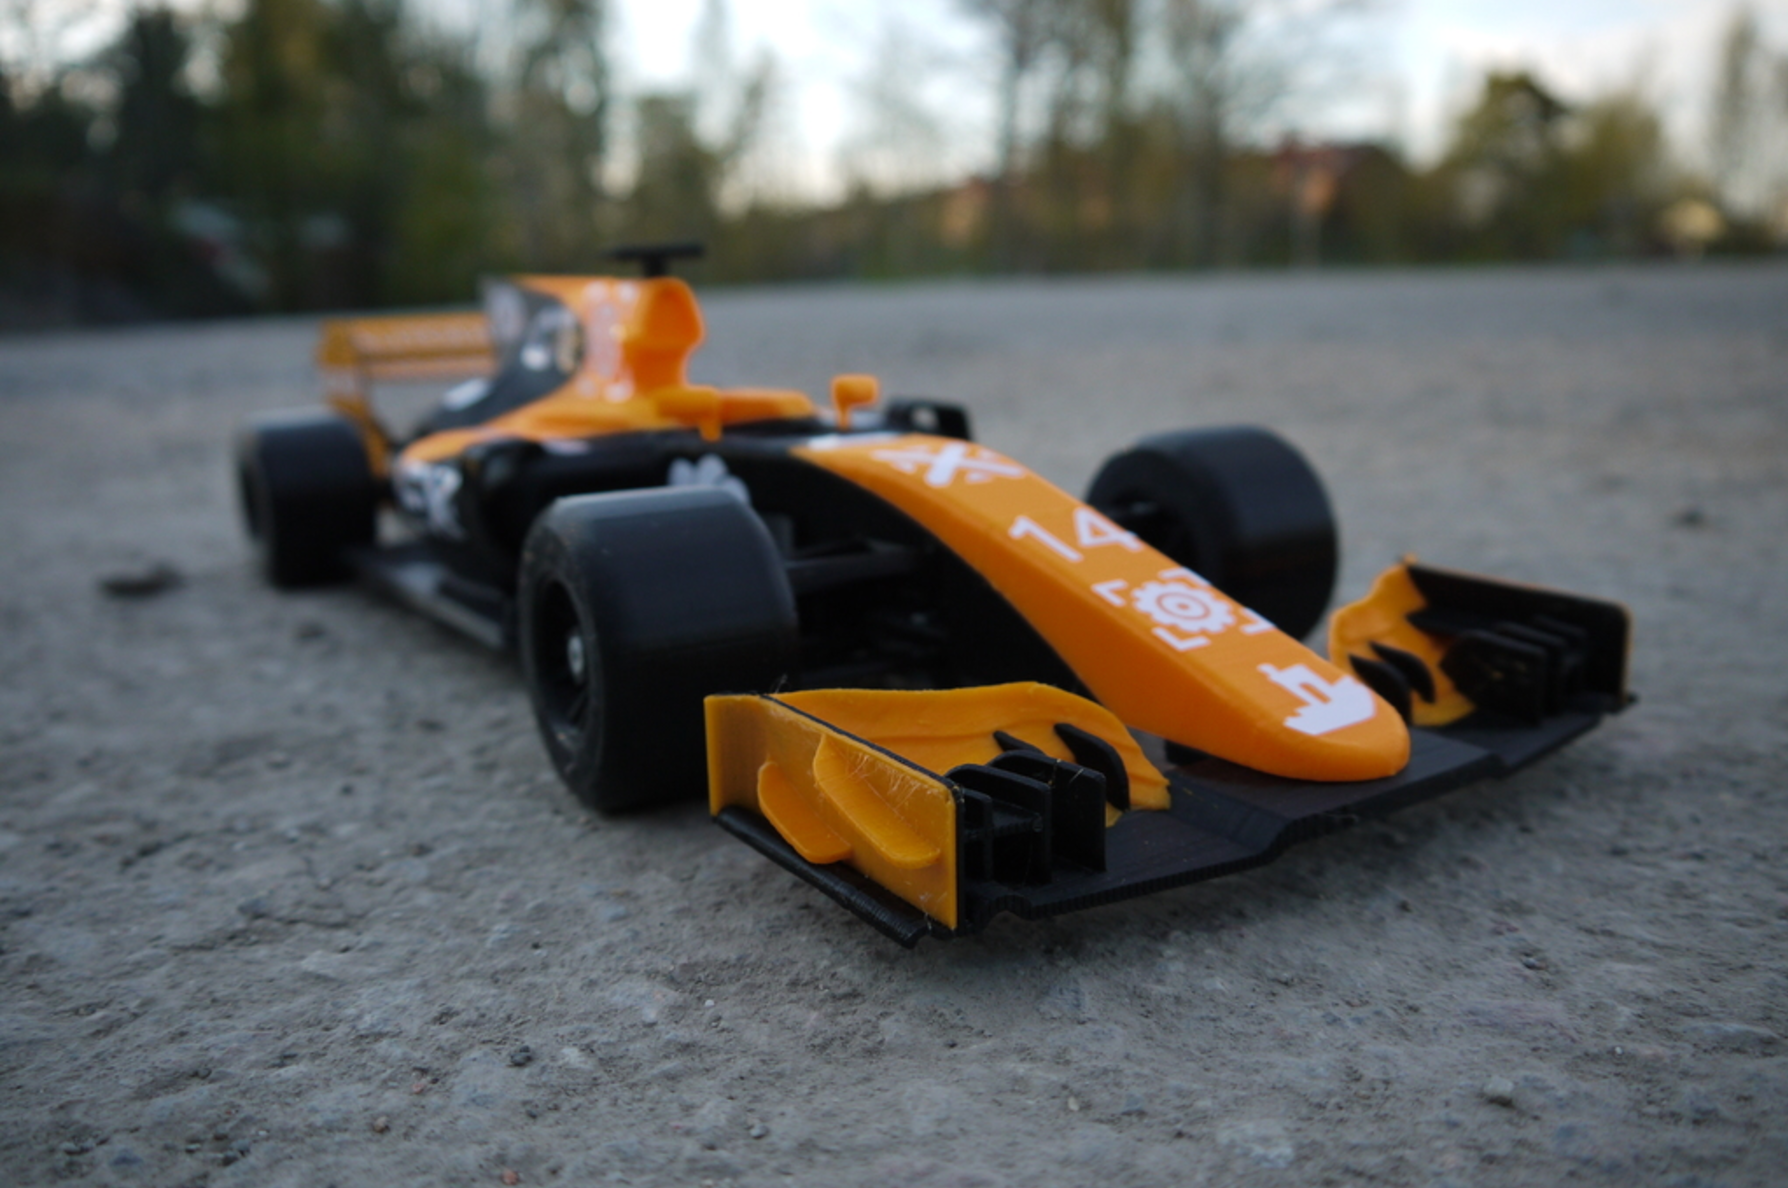 OpenRC F1 Dual Color McLaren Edition 3D Printing Free STL file Cults11.png Télécharger fichier STL gratuit OpenRC F1 Edition double couleur McLaren • Plan imprimable en 3D, DanielNoree